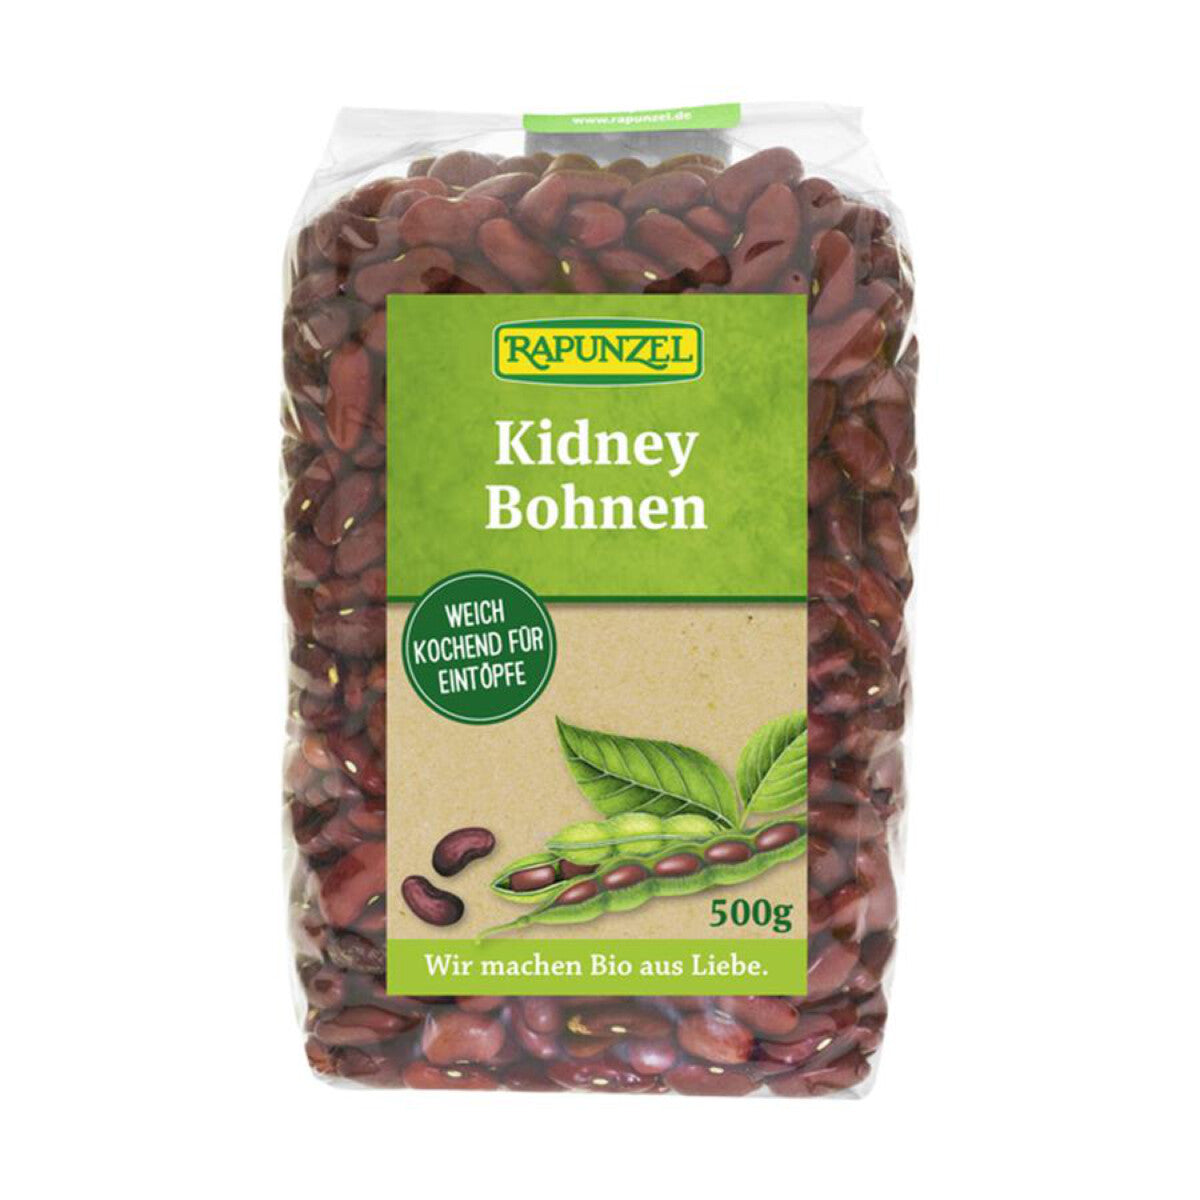 RAPUNZEL Kidney Bohnen rot – 500 g